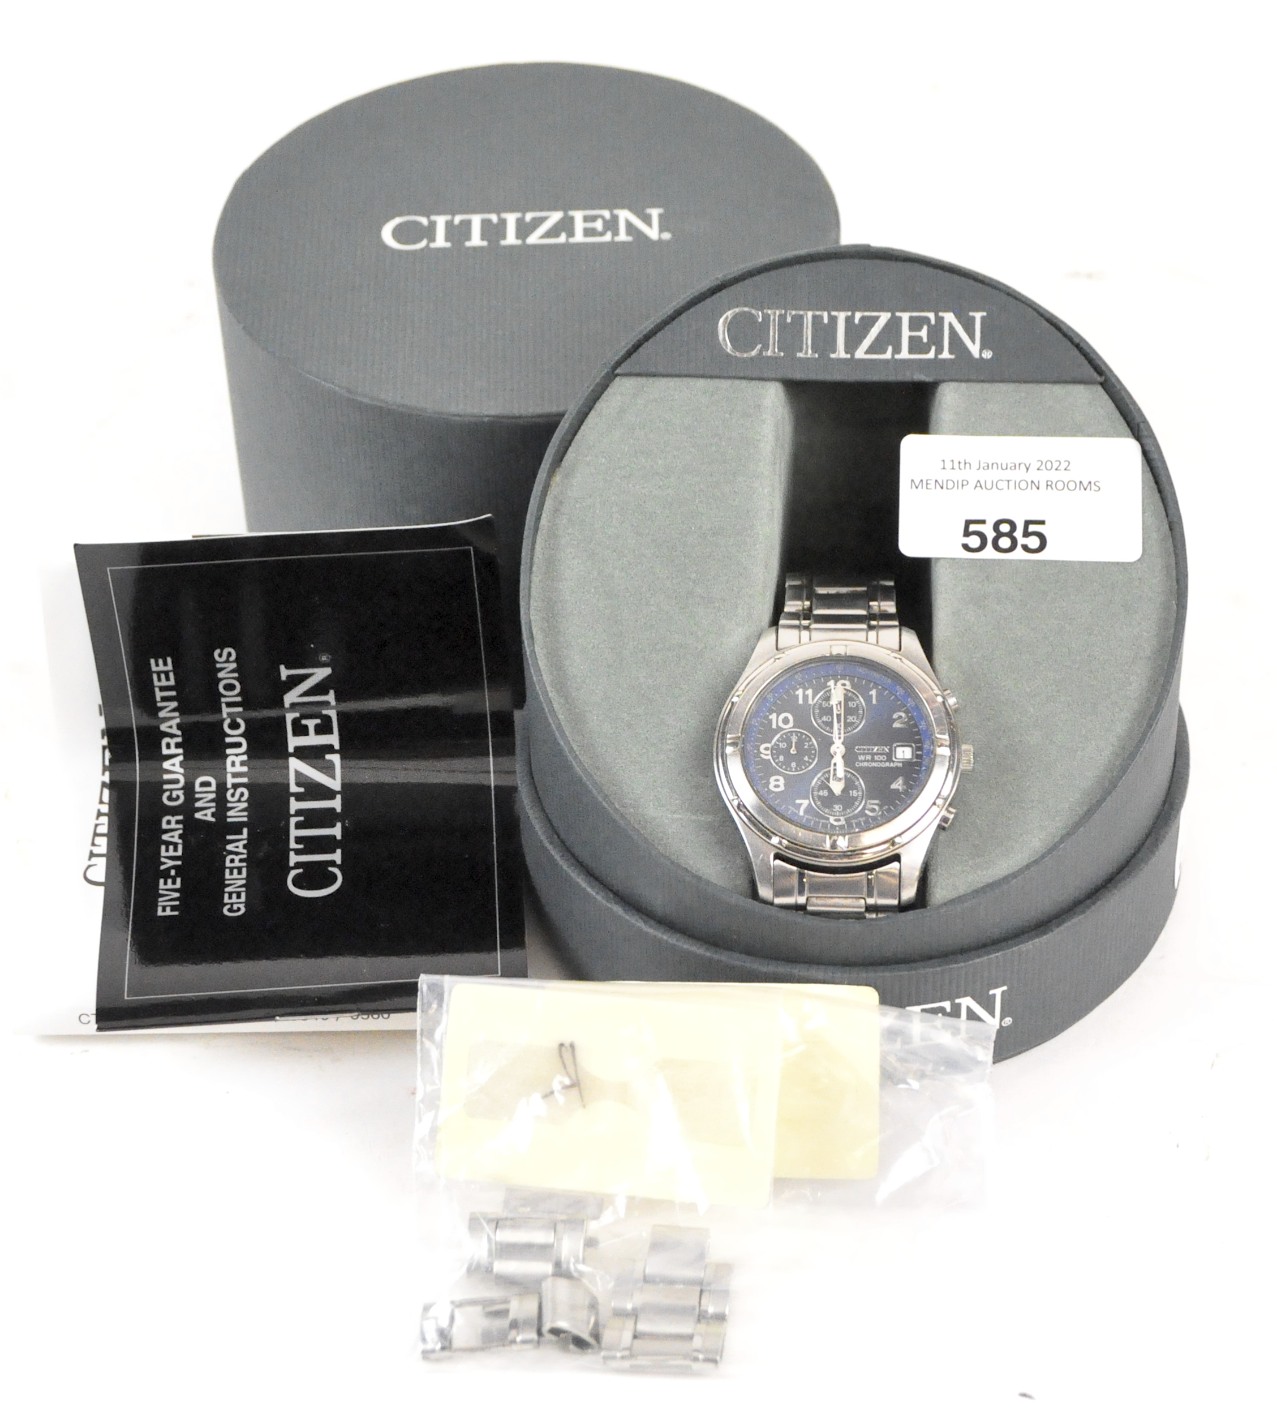 A Citizen gentleman's wristwatch,